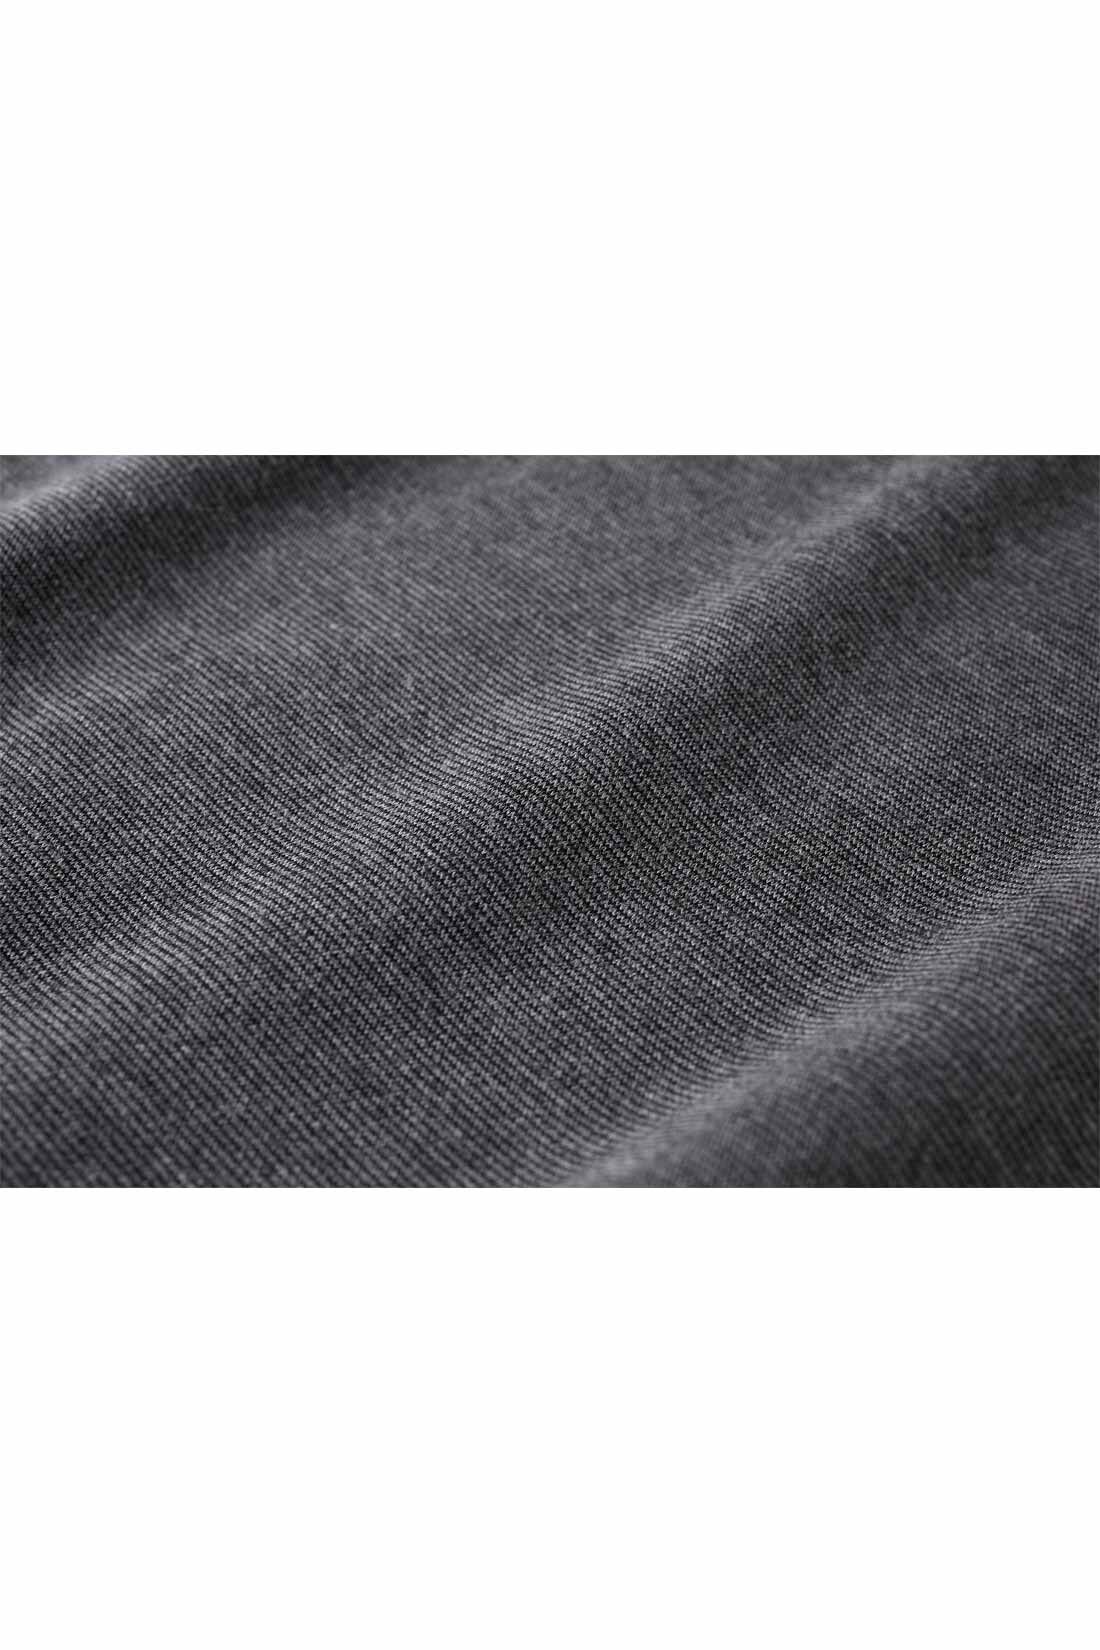 IEDIT[イディット] 前後2‐WAYで着られる Aラインカットソーワンピース〈ブラック〉|ほどよい厚みときれいな表面感が高見えするリッチ感のある素材。